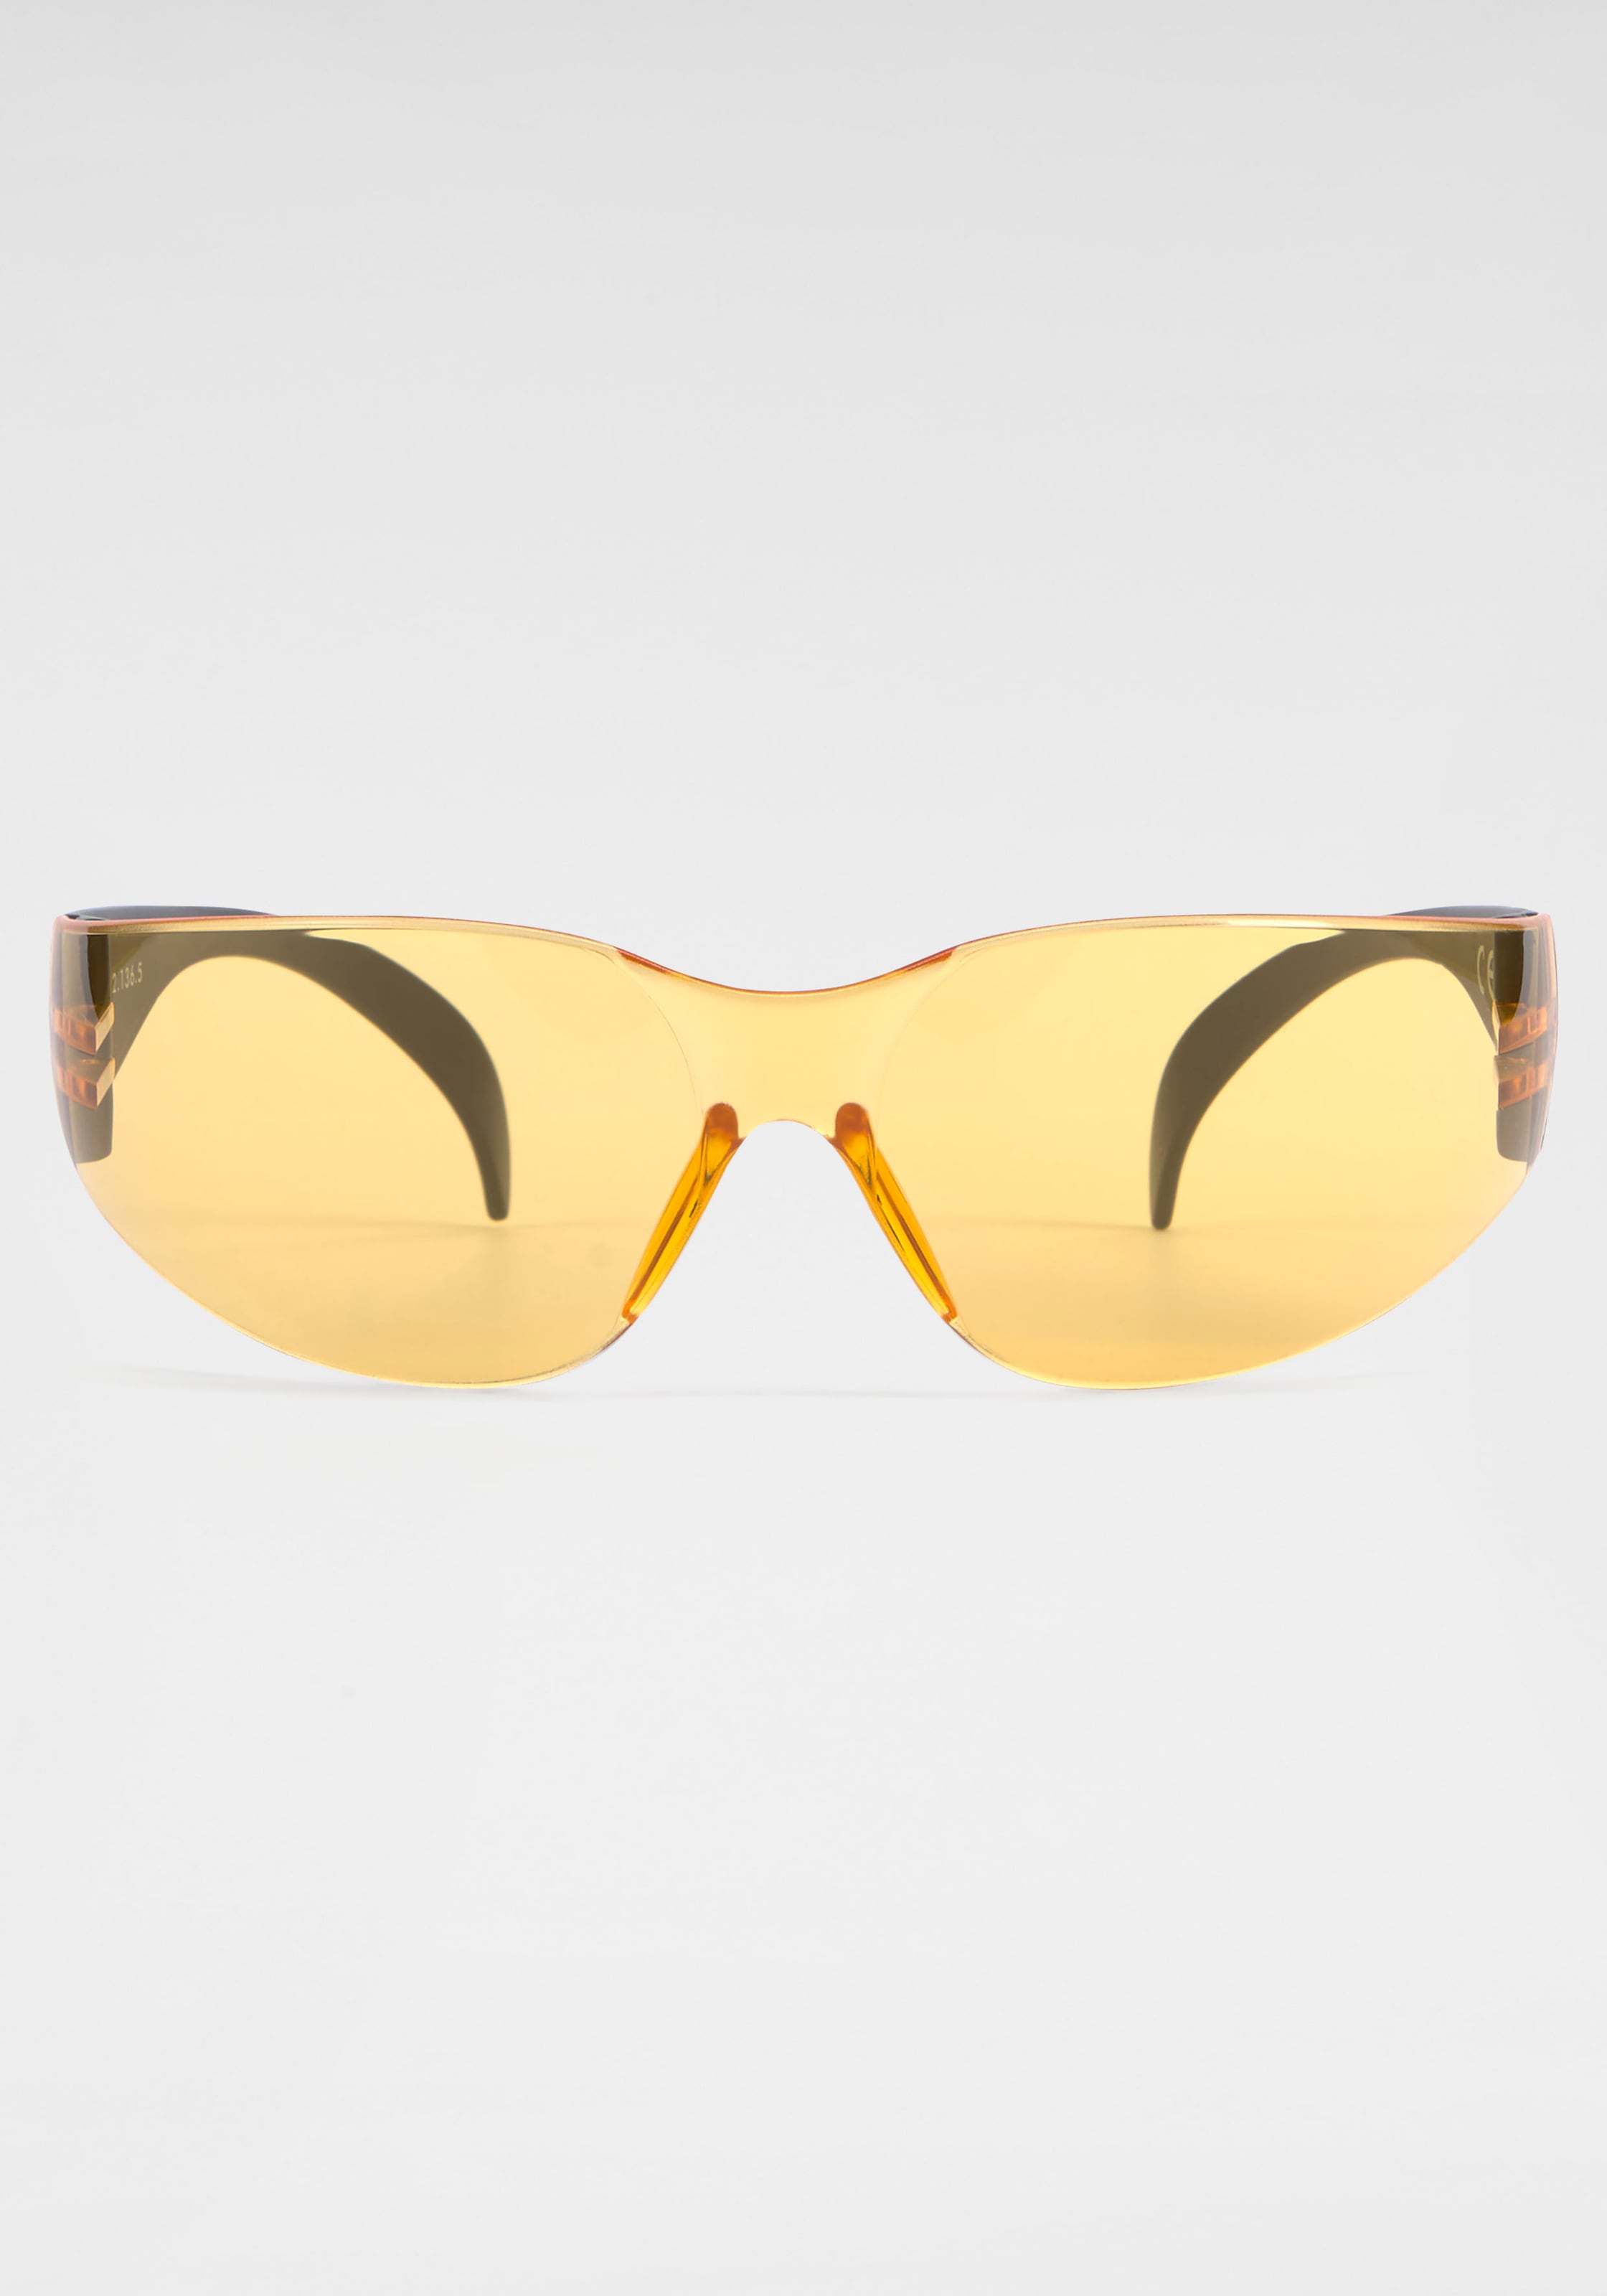 Randlos online IN OTTO shoppen Eyewear Sonnenbrille, BACK BLACK bei